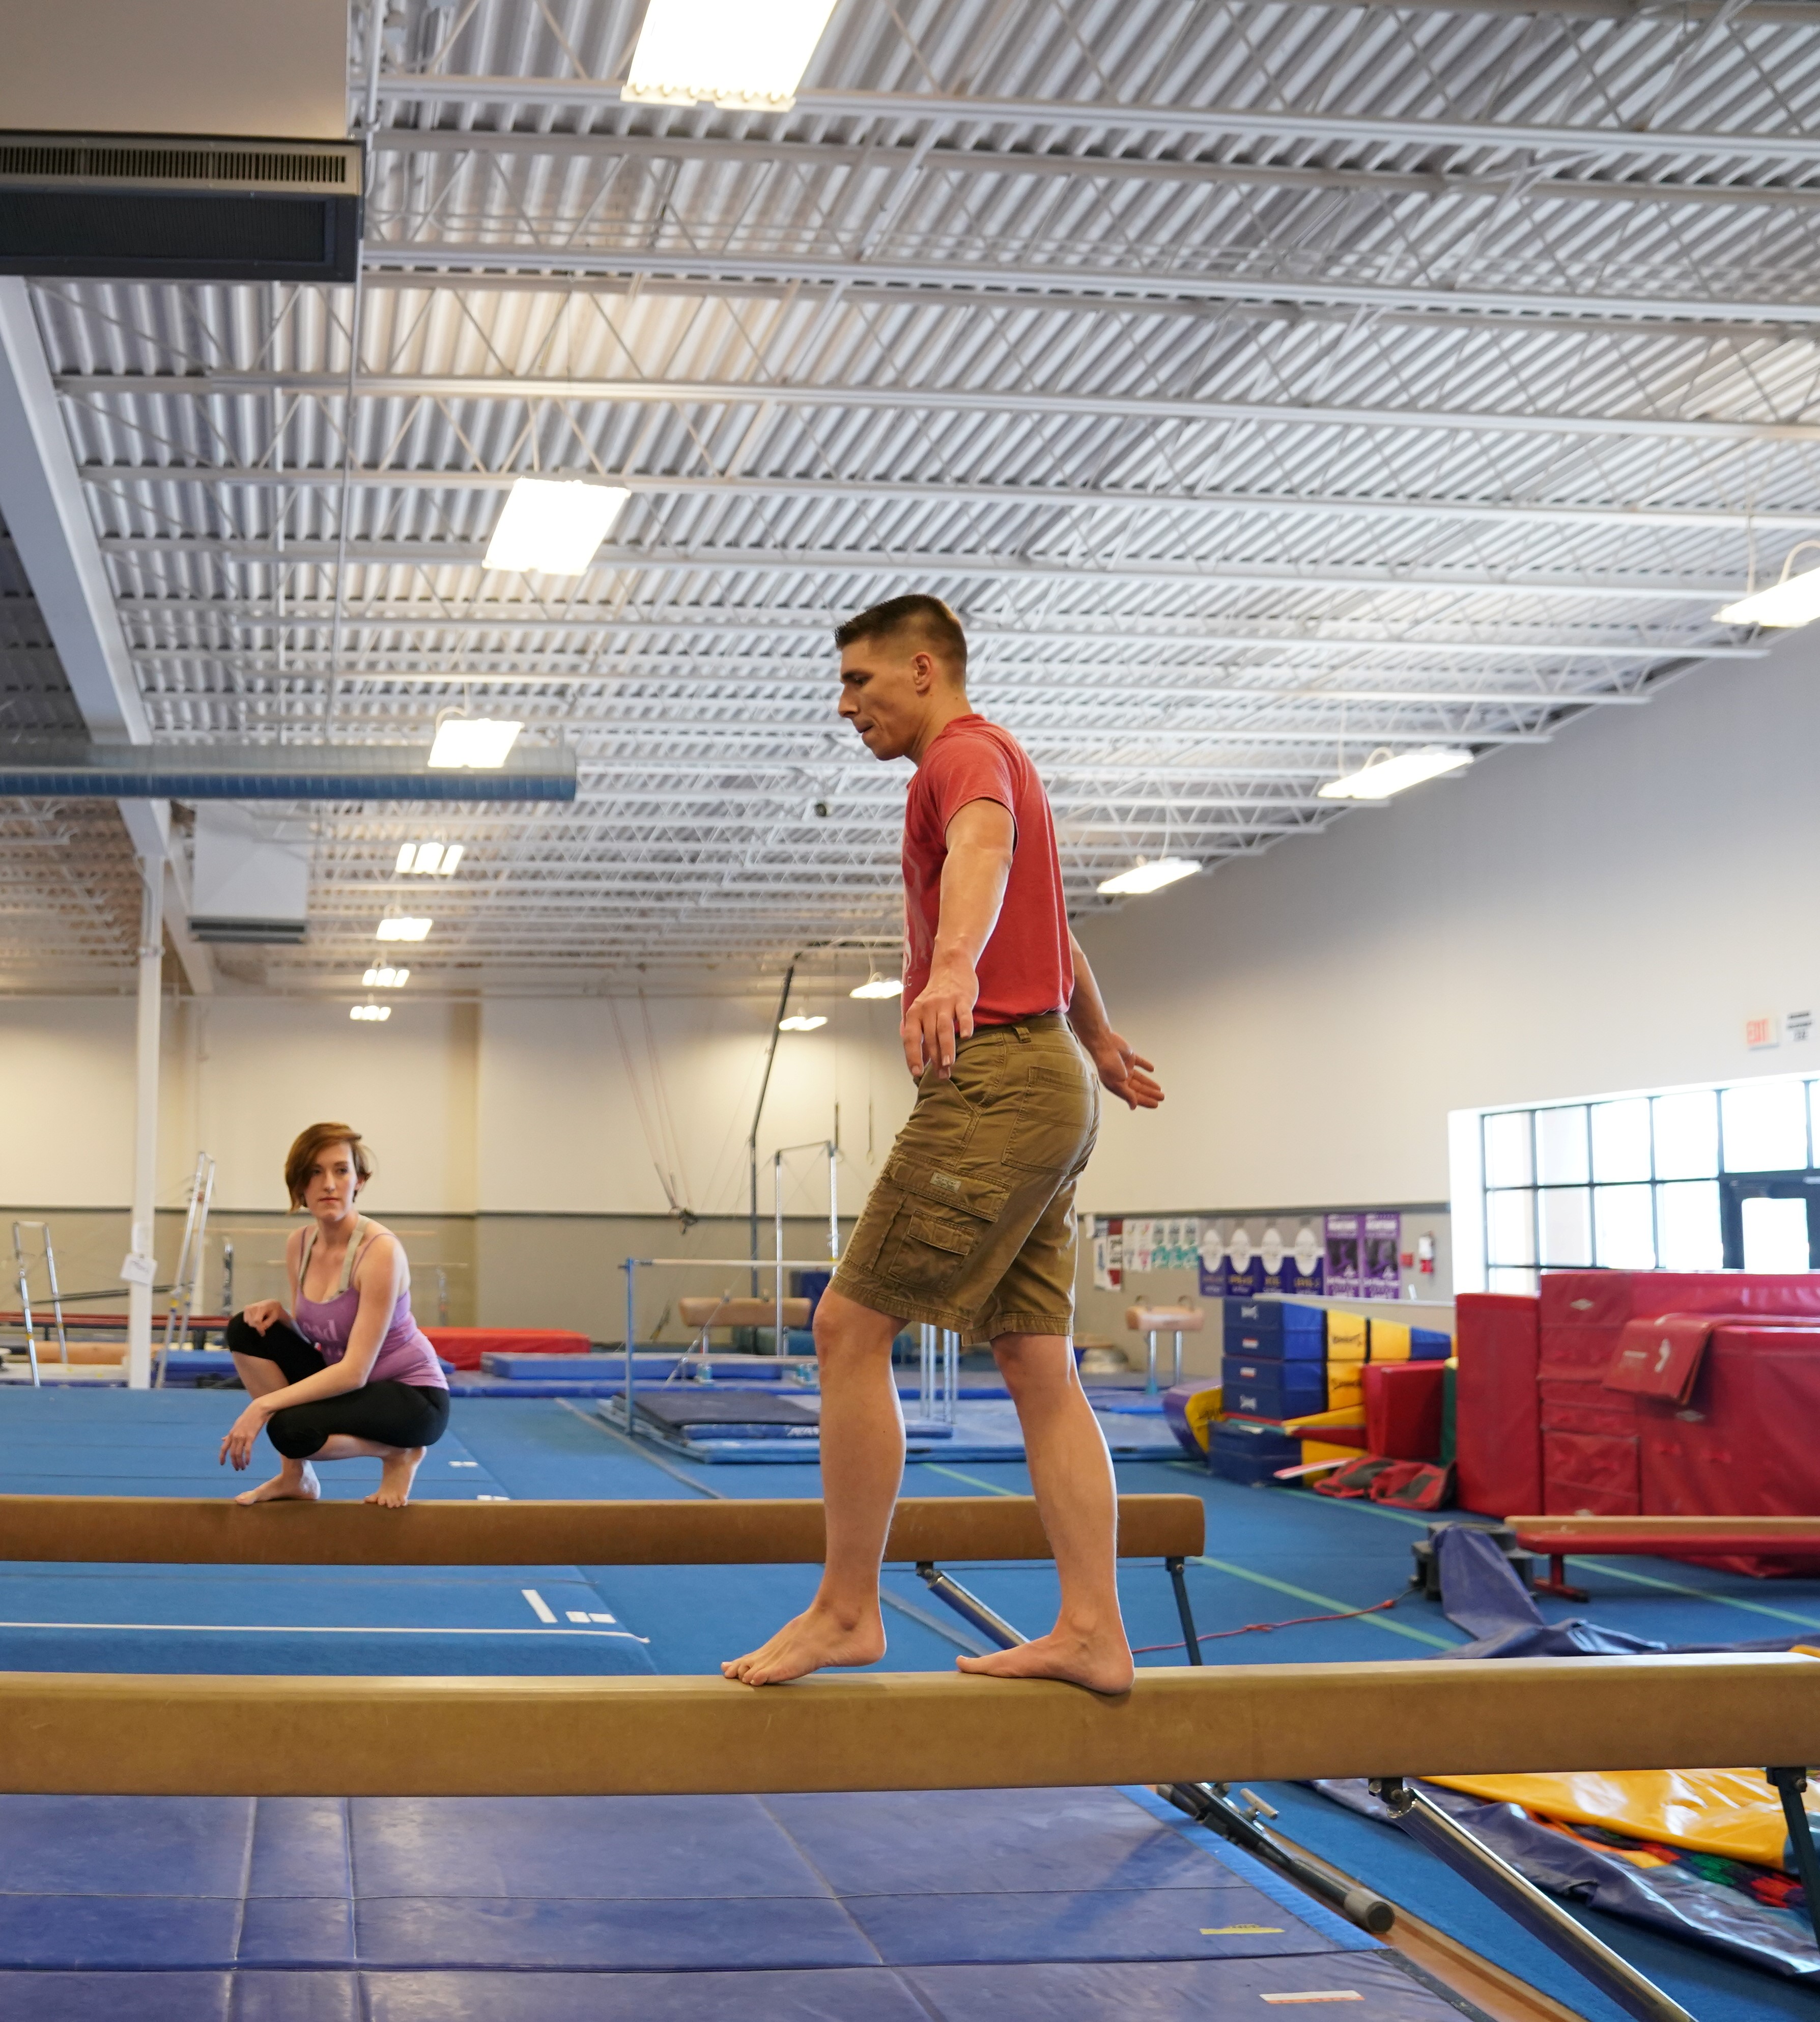 Gymnastics Practice at an Indoor Gym